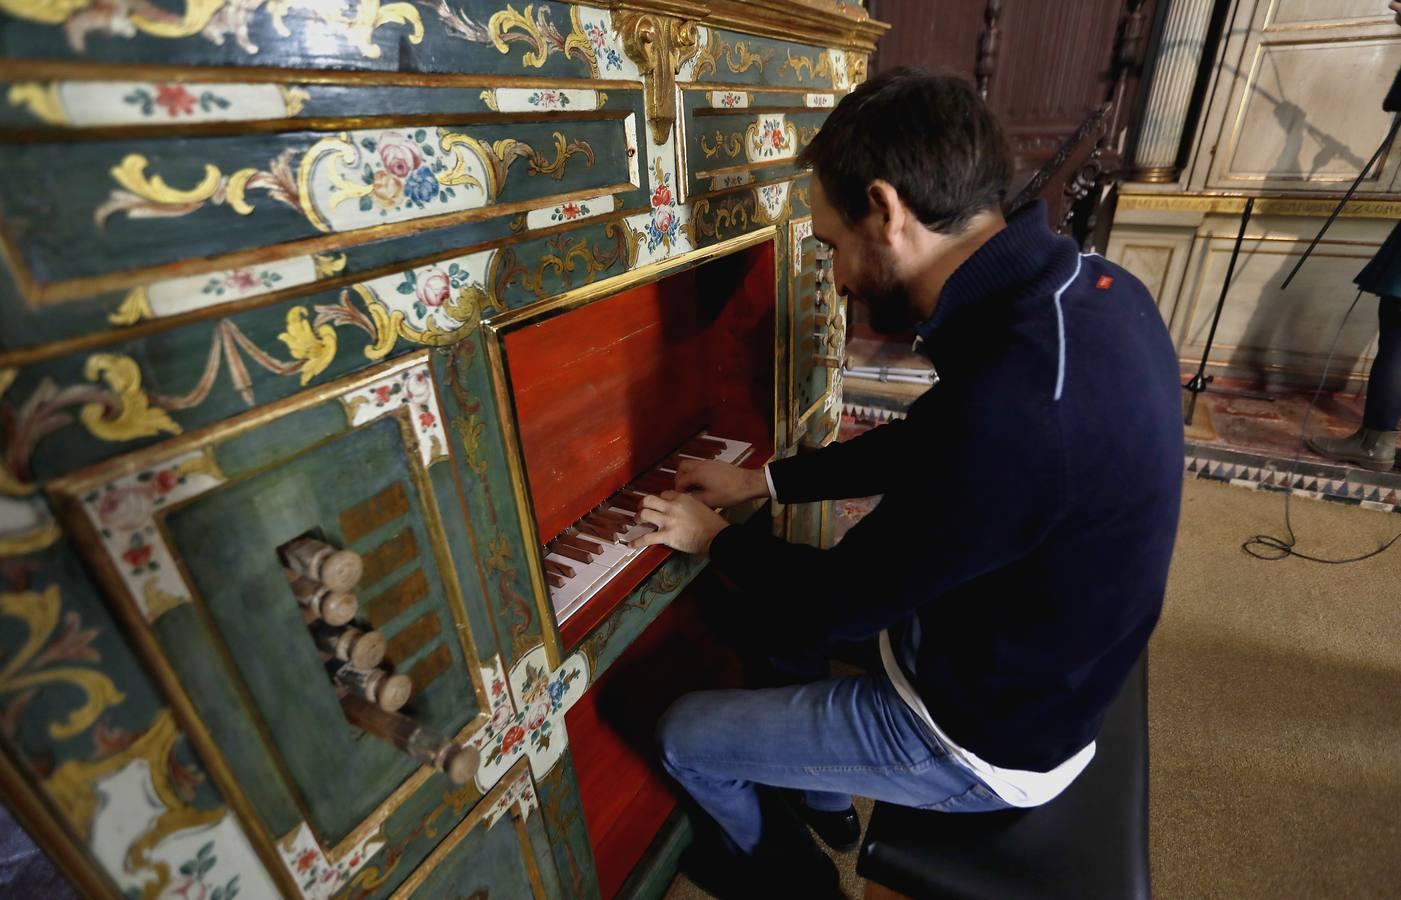 El órgano de Santa Inés vuelve a sonar treinta años después